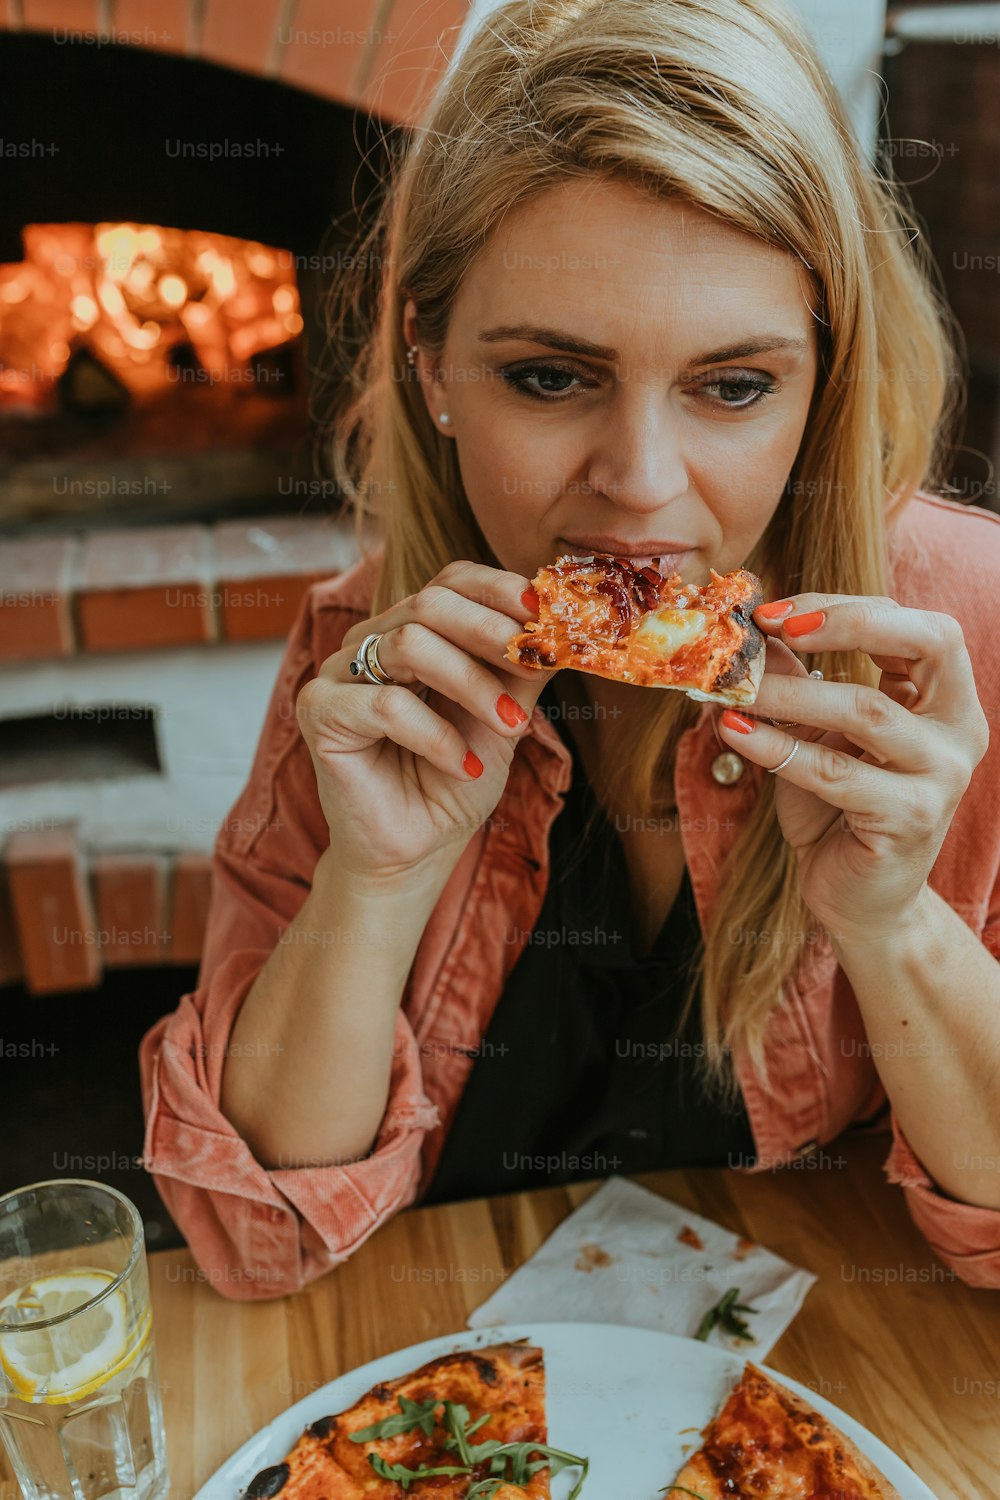 Une femme assise à une table mangeant une part de pizza